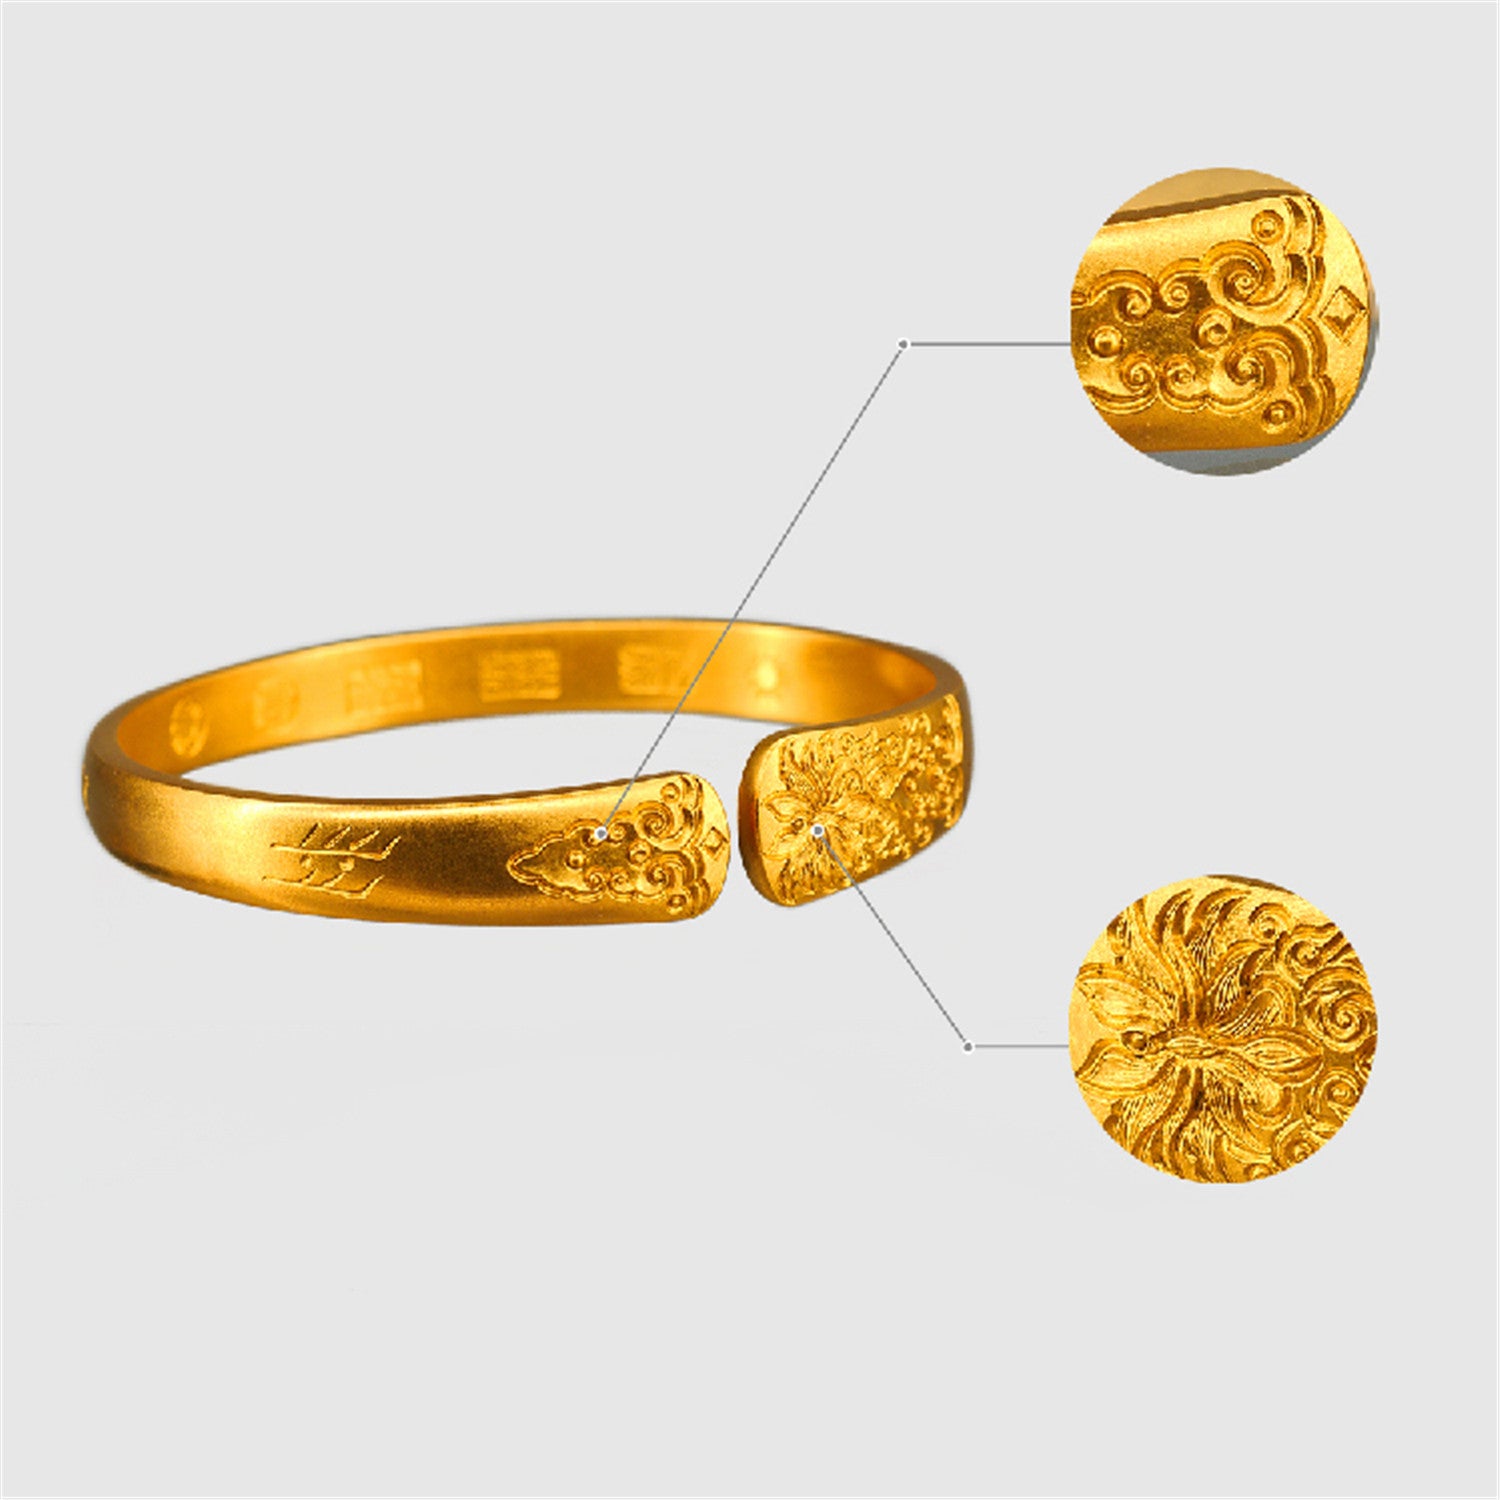 EVECOCO Full Gold Bracelet For Female,Flower Pattern,Hand Forging Elegant,55g